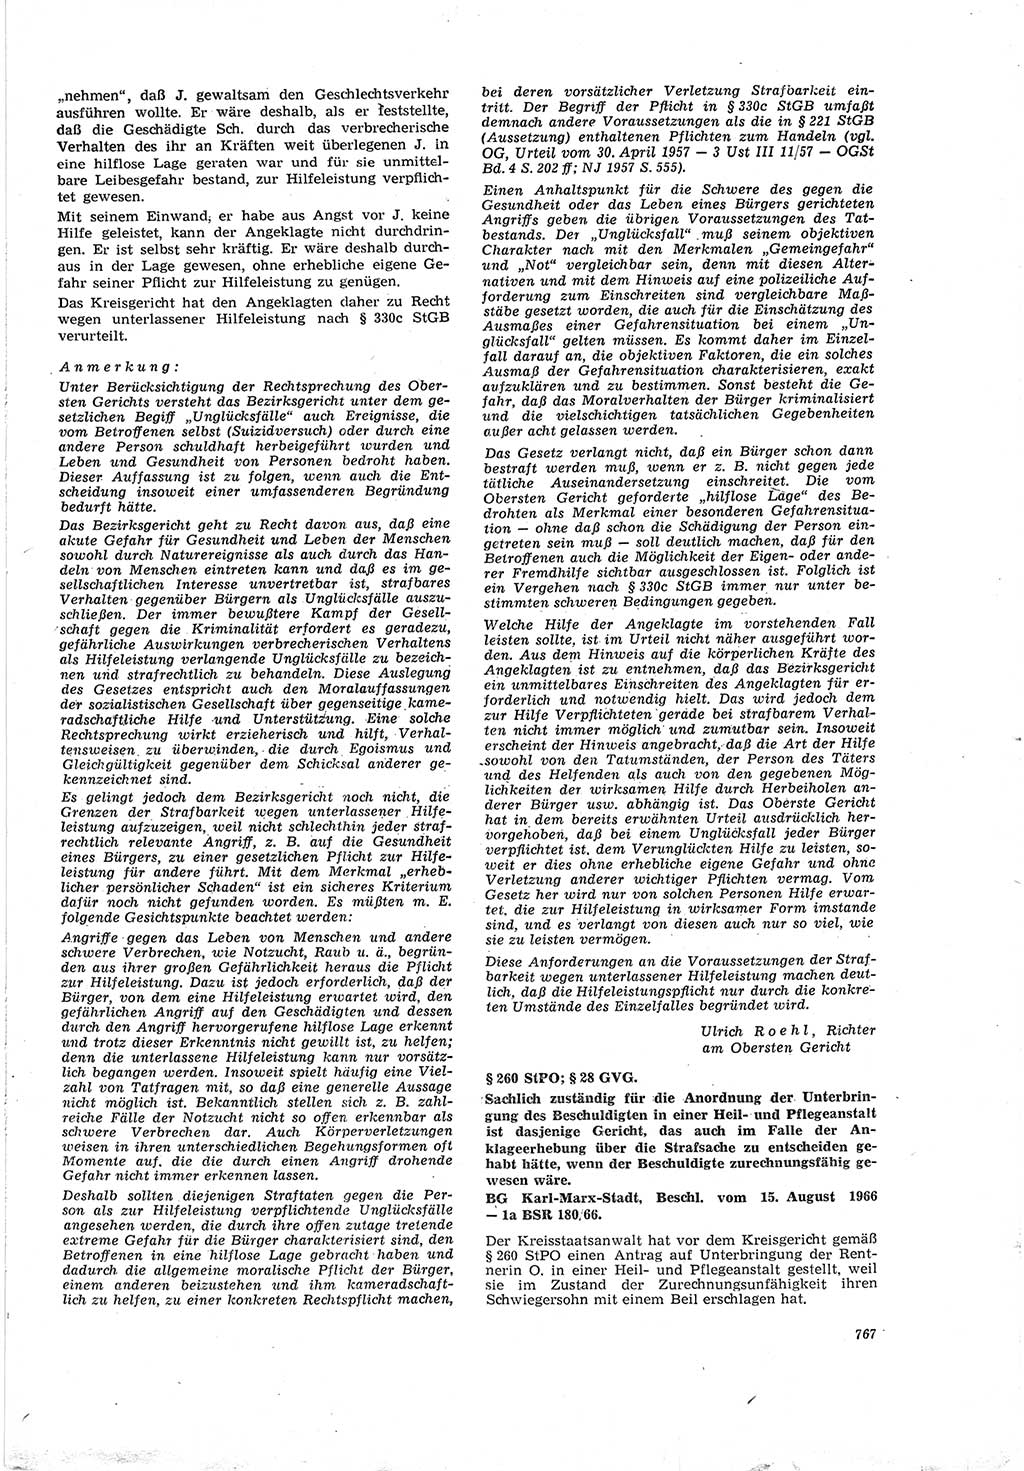 Neue Justiz (NJ), Zeitschrift für Recht und Rechtswissenschaft [Deutsche Demokratische Republik (DDR)], 20. Jahrgang 1966, Seite 767 (NJ DDR 1966, S. 767)